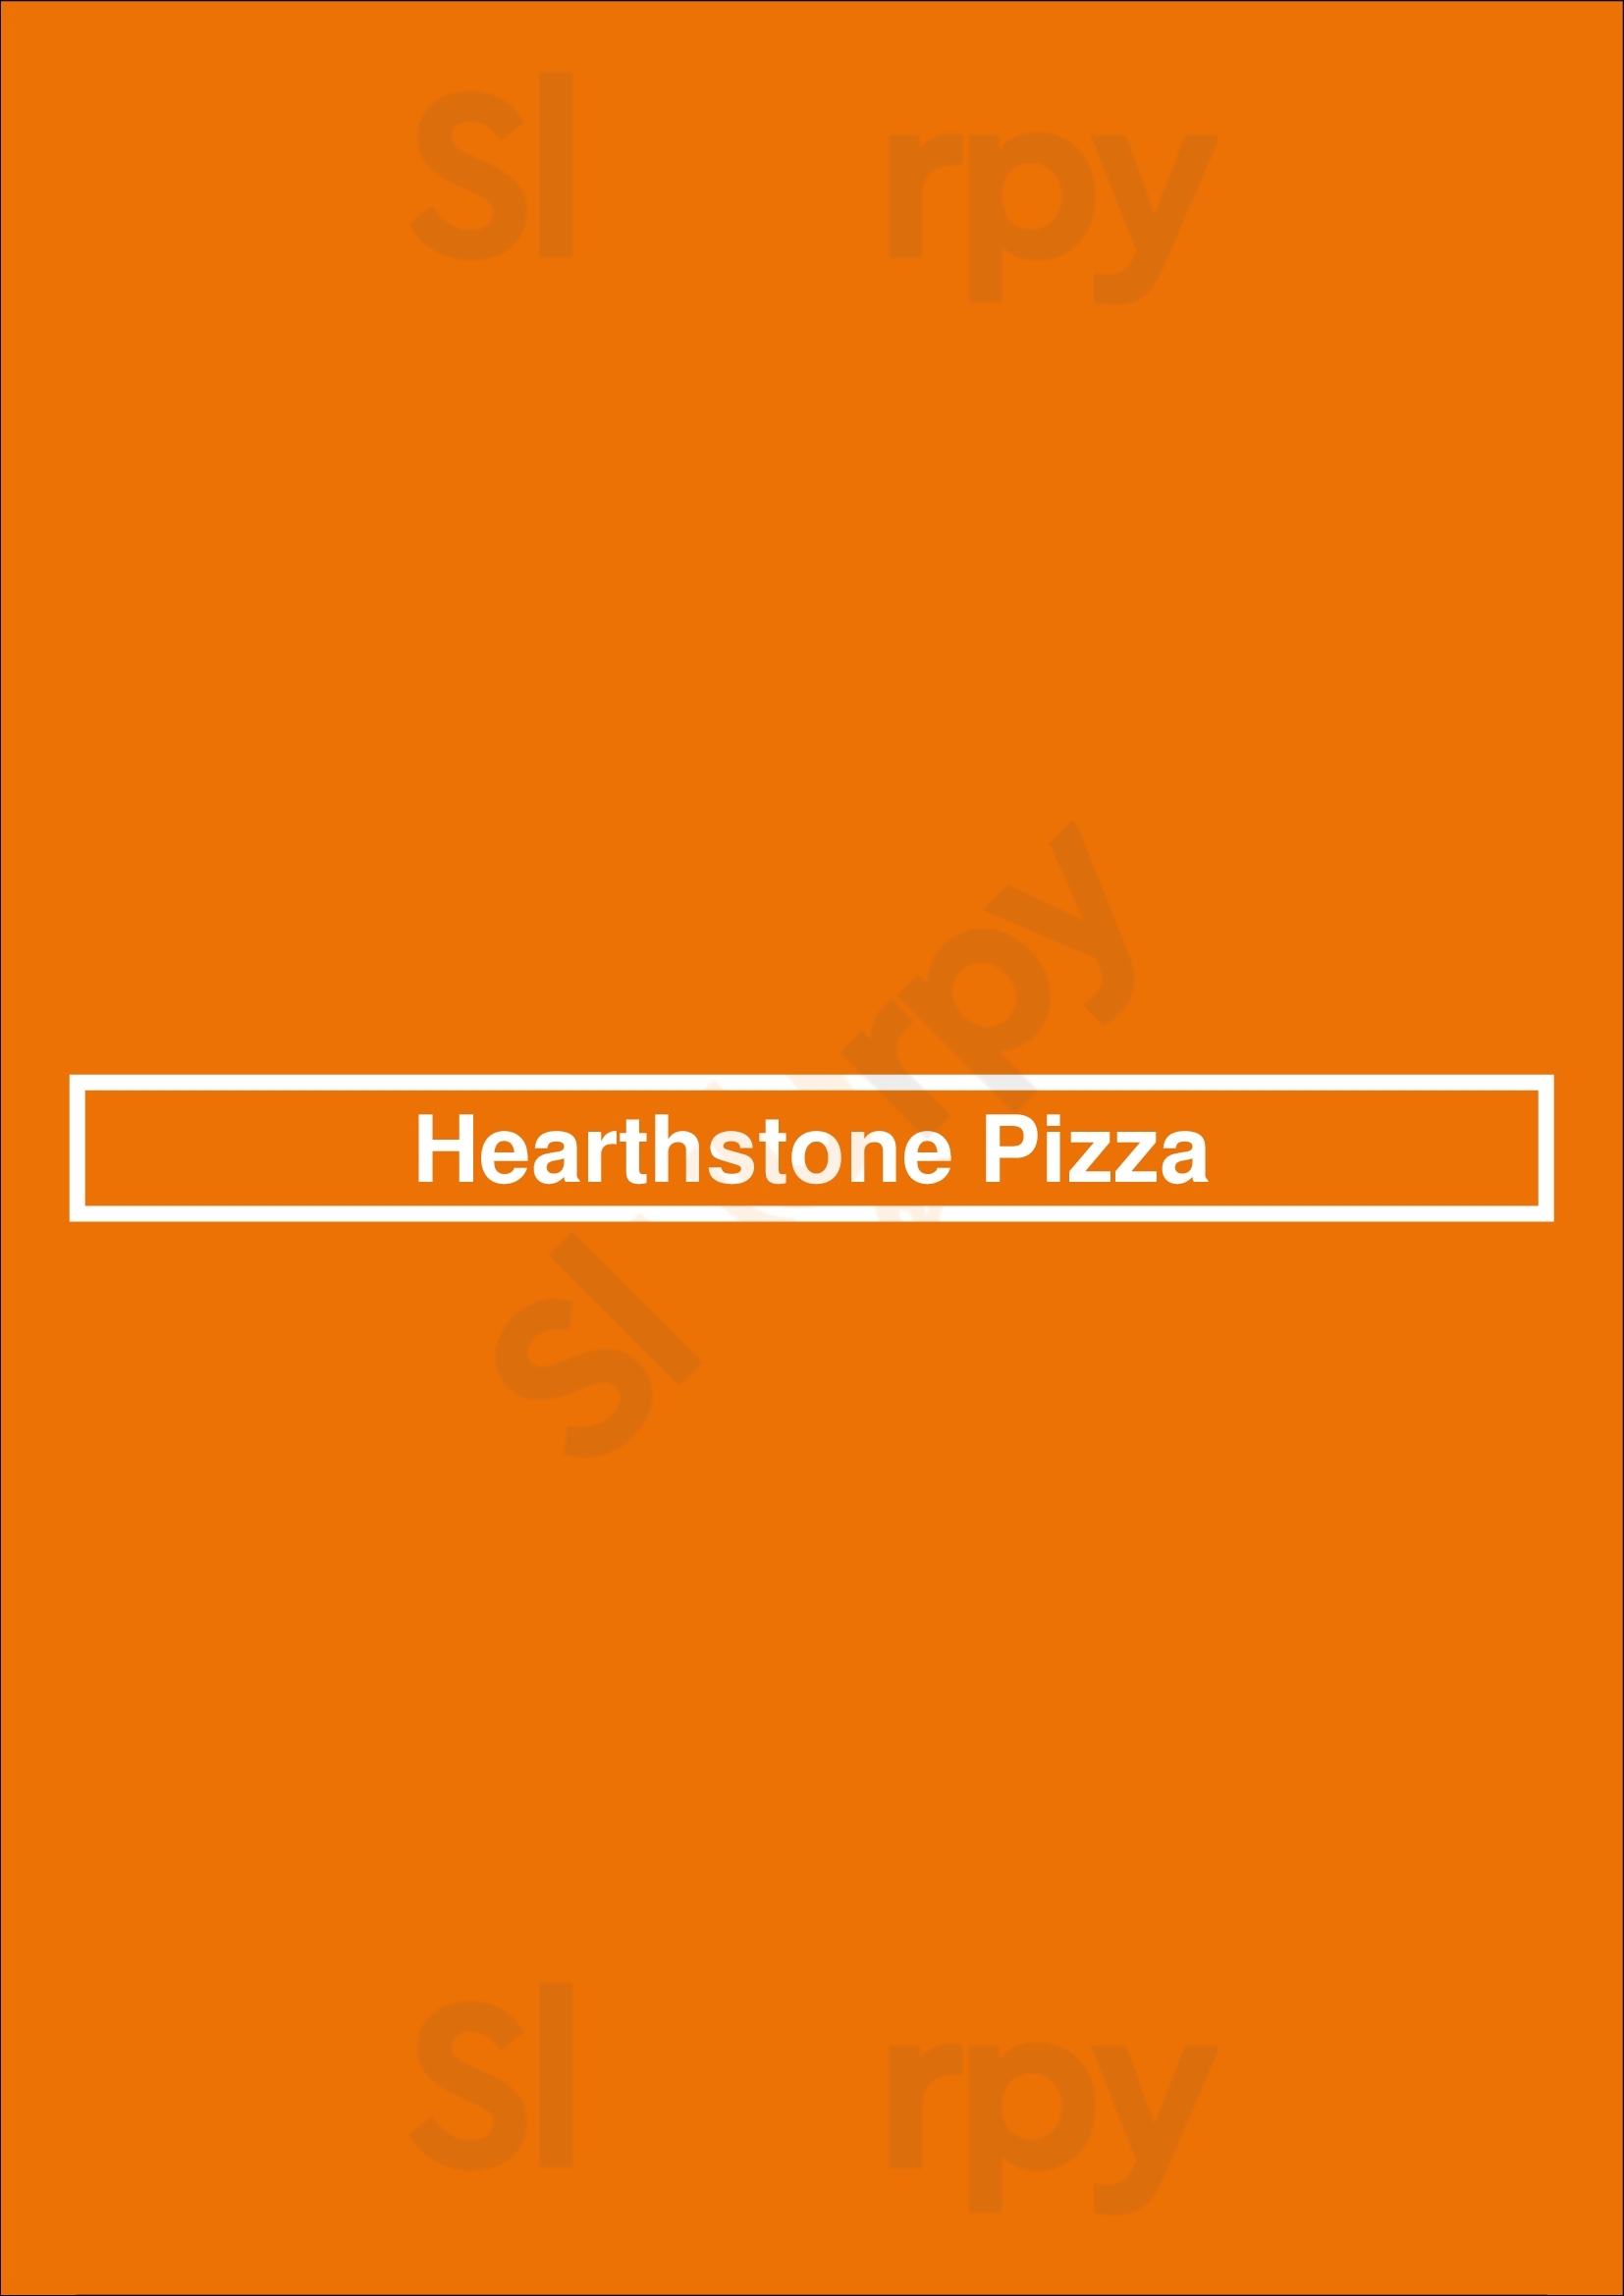 Hearthstone Pizza Port Coquitlam Menu - 1